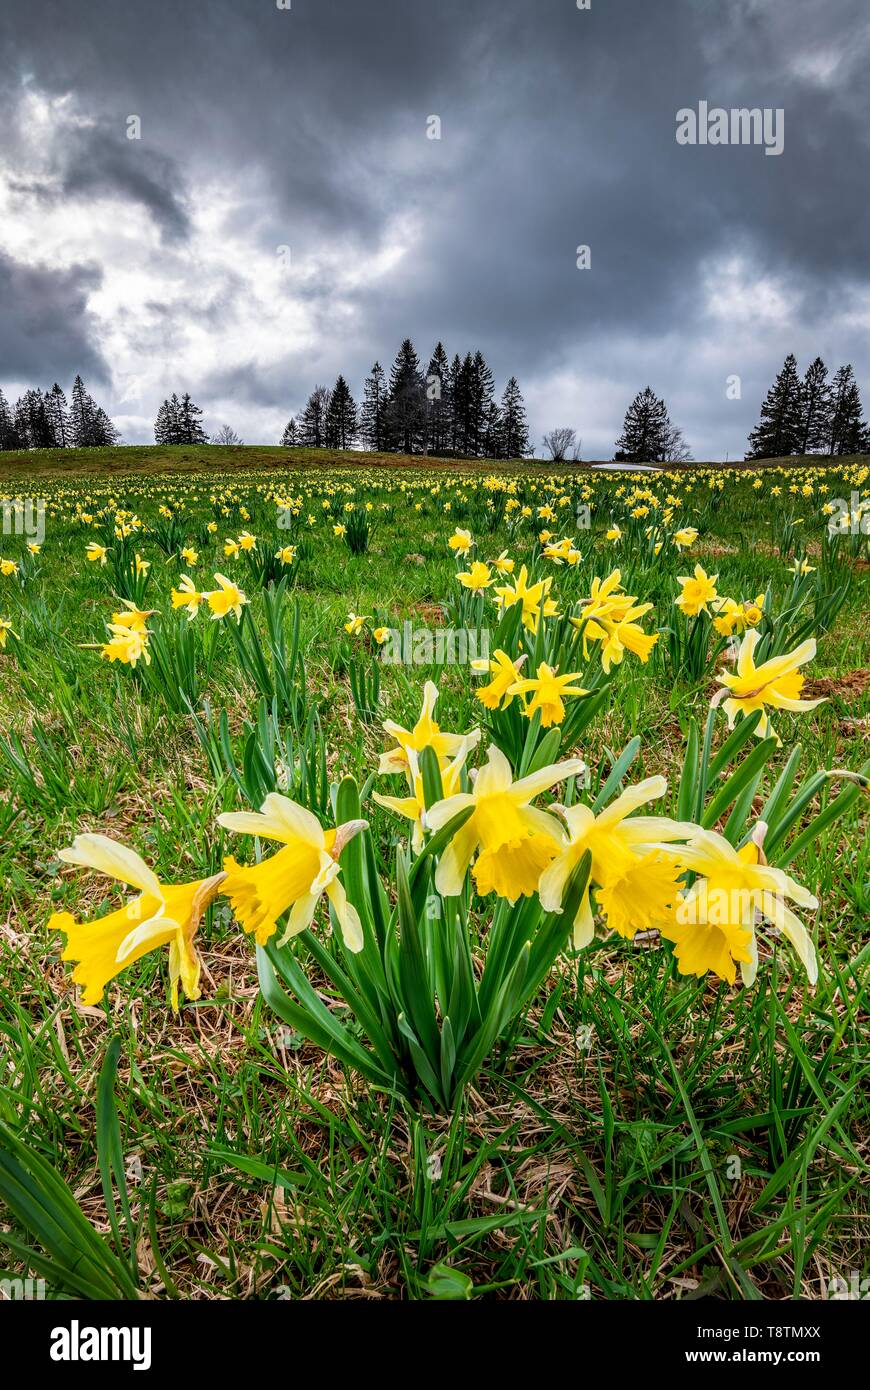 Fleurs de la mer jaune de fleurs de jonquilles (Narcissus) dans un pré à l'orage, Tete de Ran, vue de Alpes, Jura suisse, dans le canton de Neuchâtel Banque D'Images